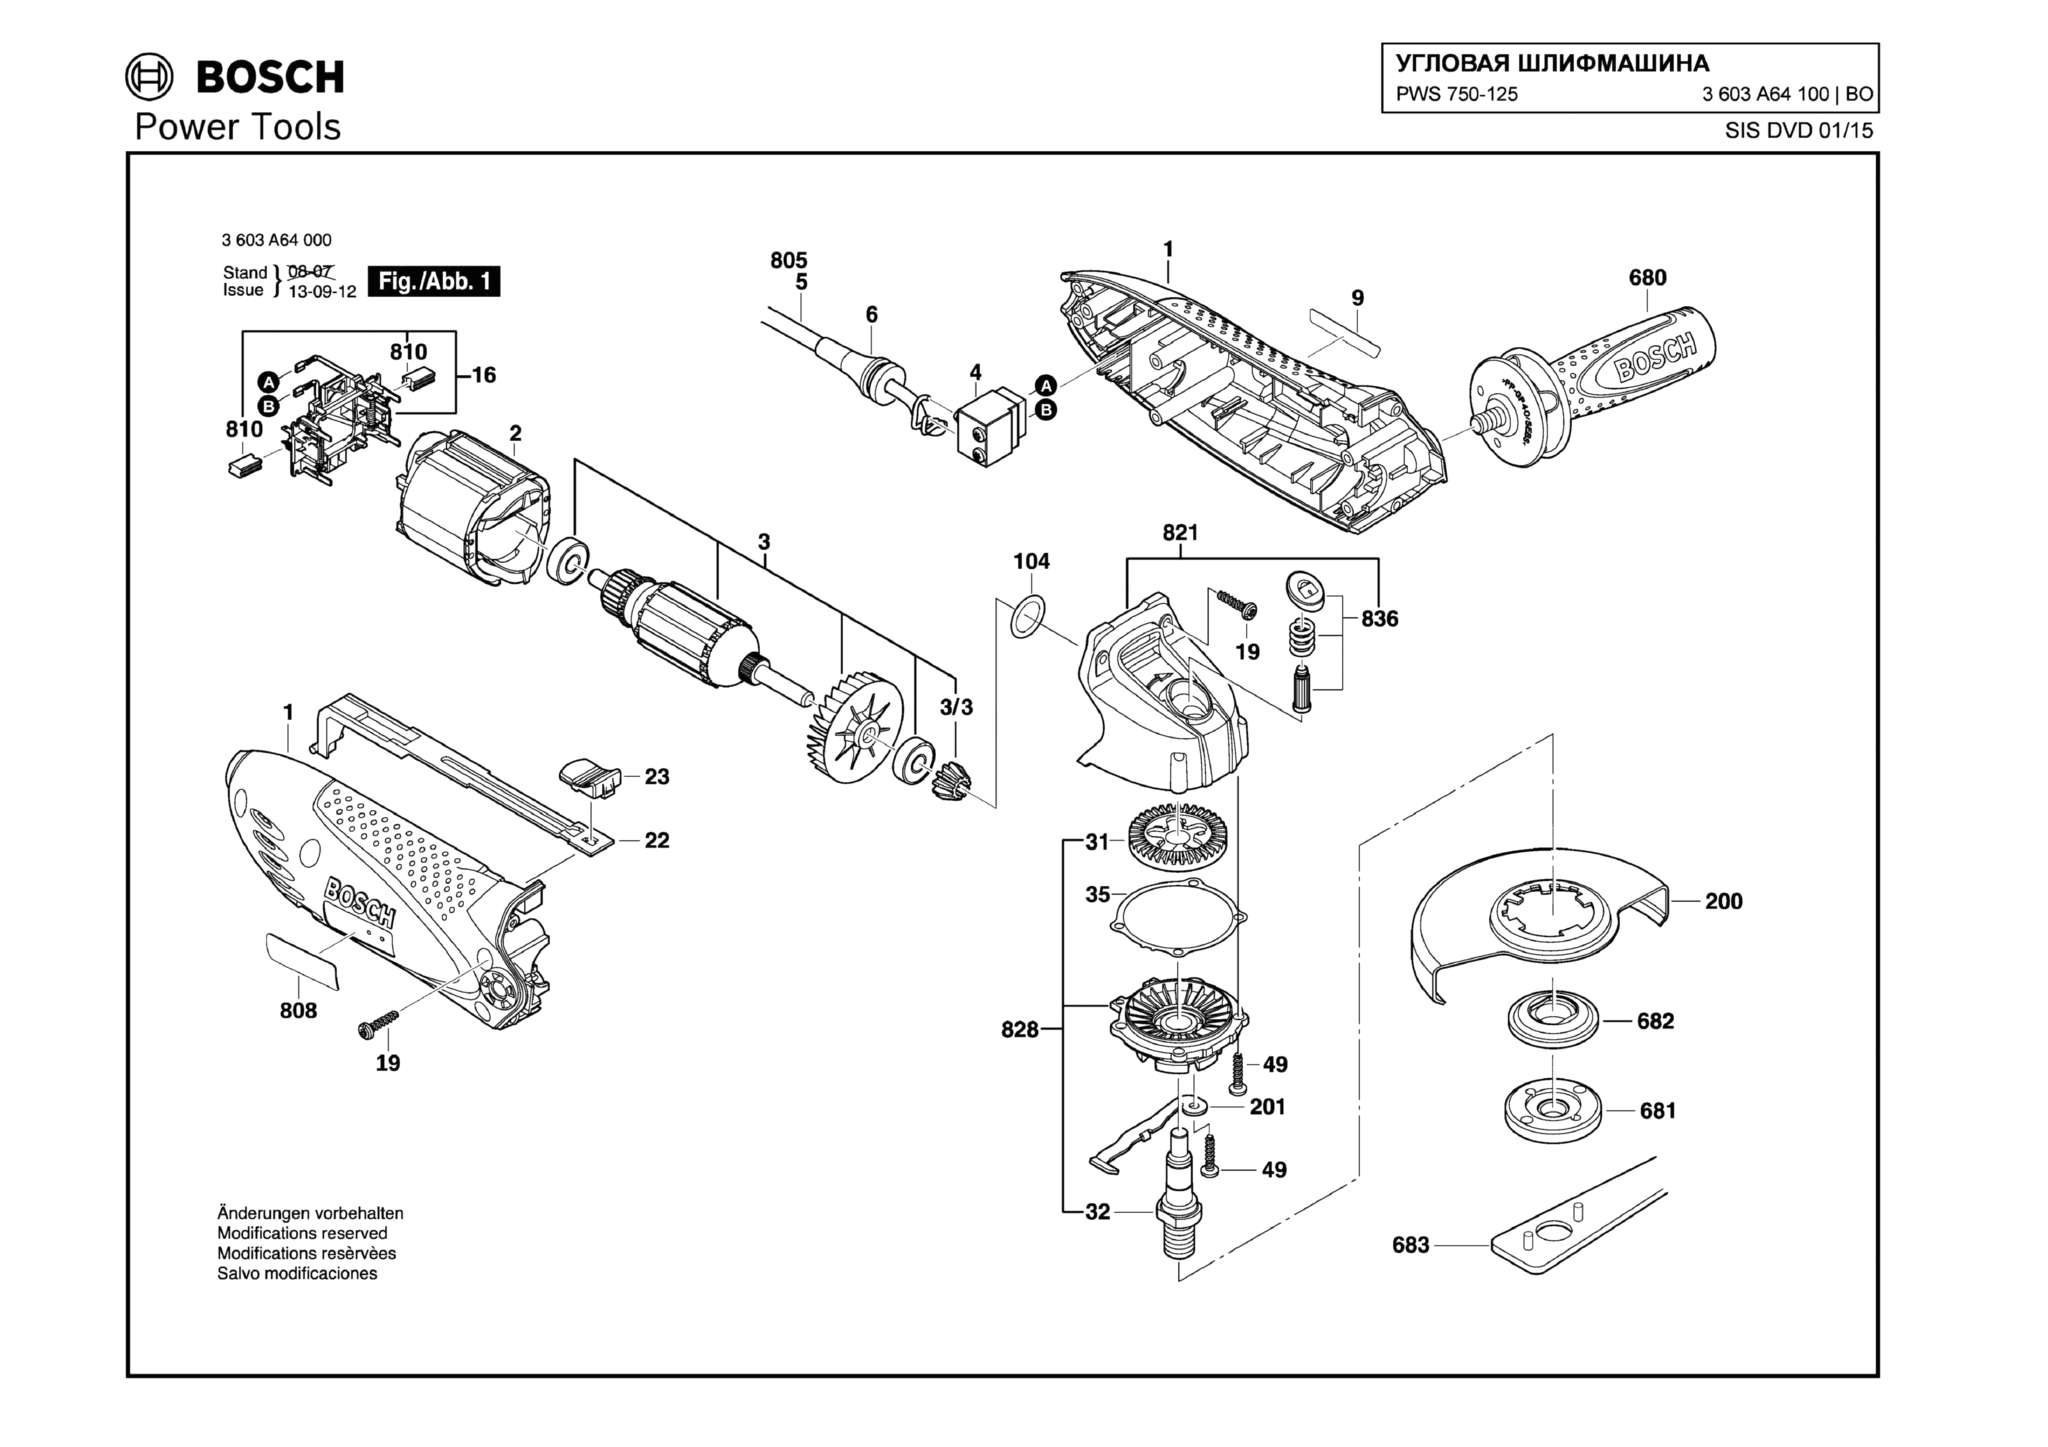 Запчасти, схема и деталировка Bosch PWS 750-125 (ТИП 3603A64100)